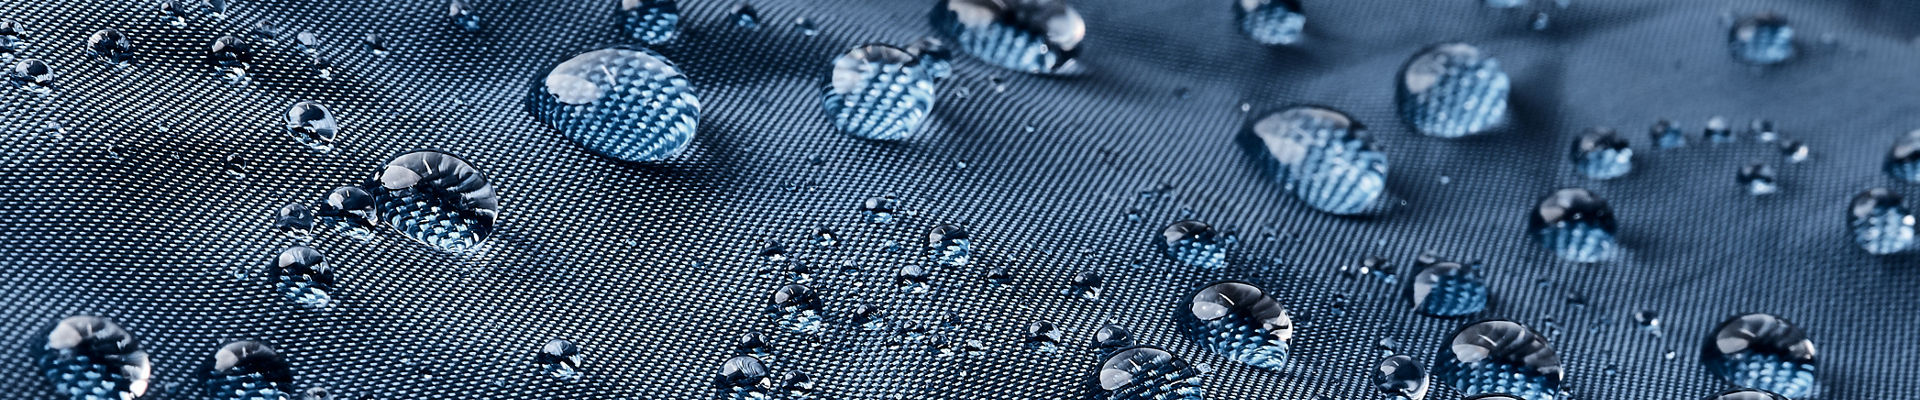 gotículas de água em tecido azul impermeável 